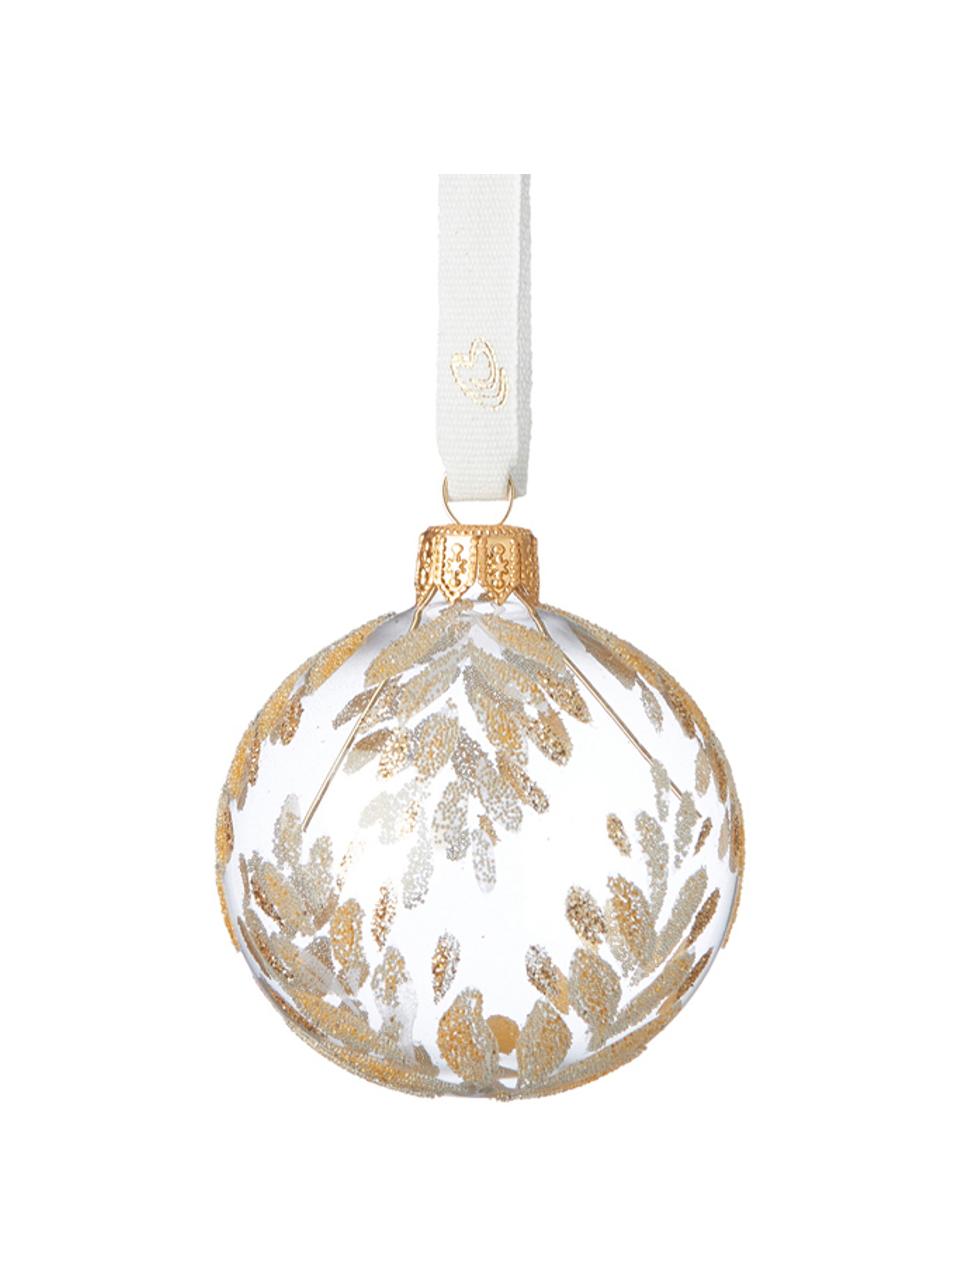 Boules de Noël Cadelia, 2 pièces, Transparent, couleur dorée